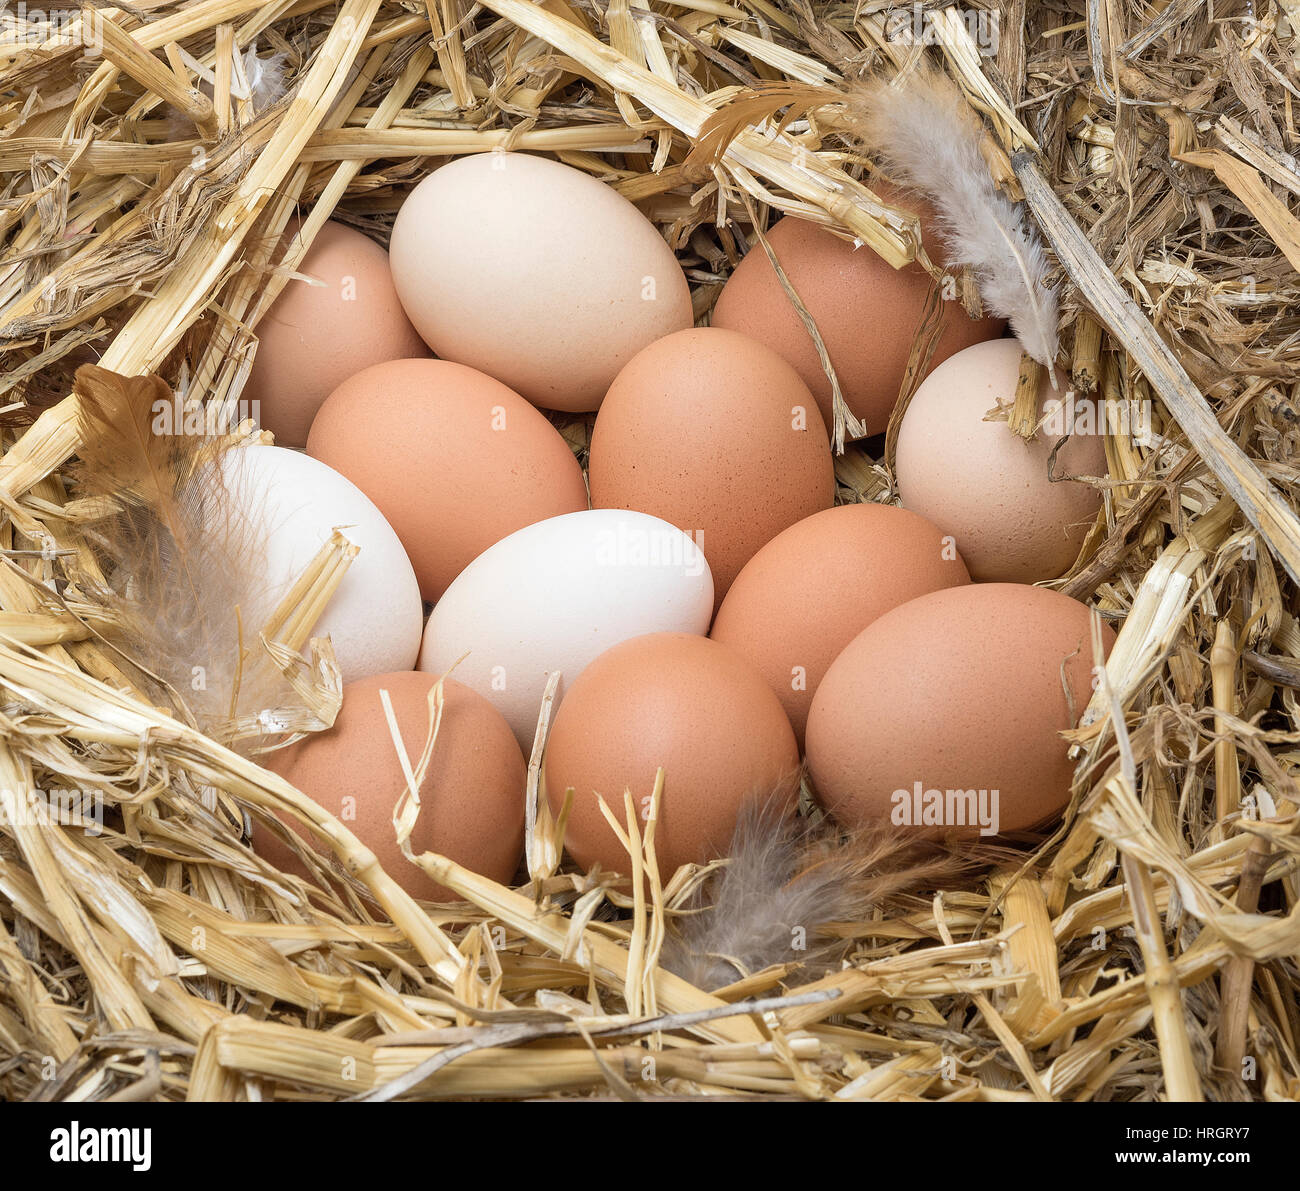 Marrón y blanco de huevos de gallina con plumas en un nido de paja. Foto de stock